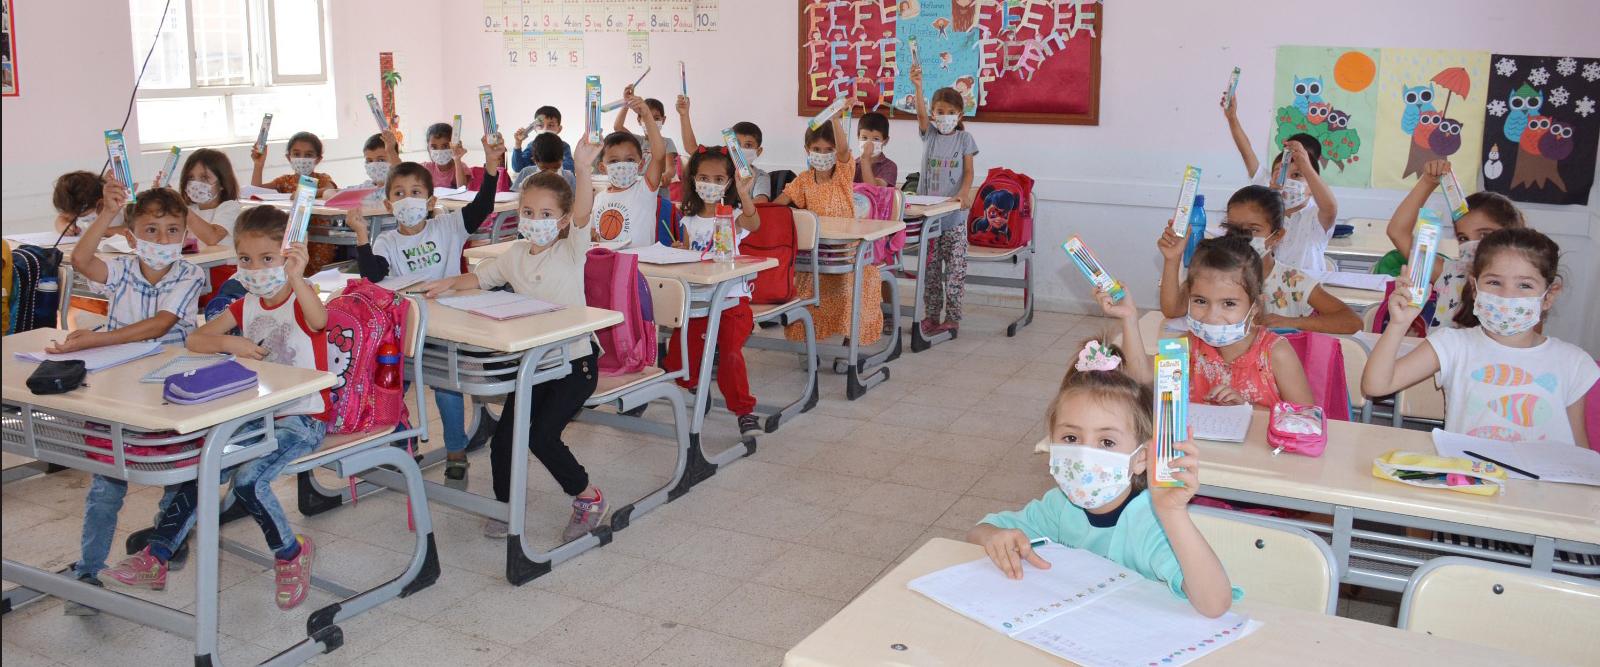 Köy okullarındaki çocuklara kalem hediye edildi